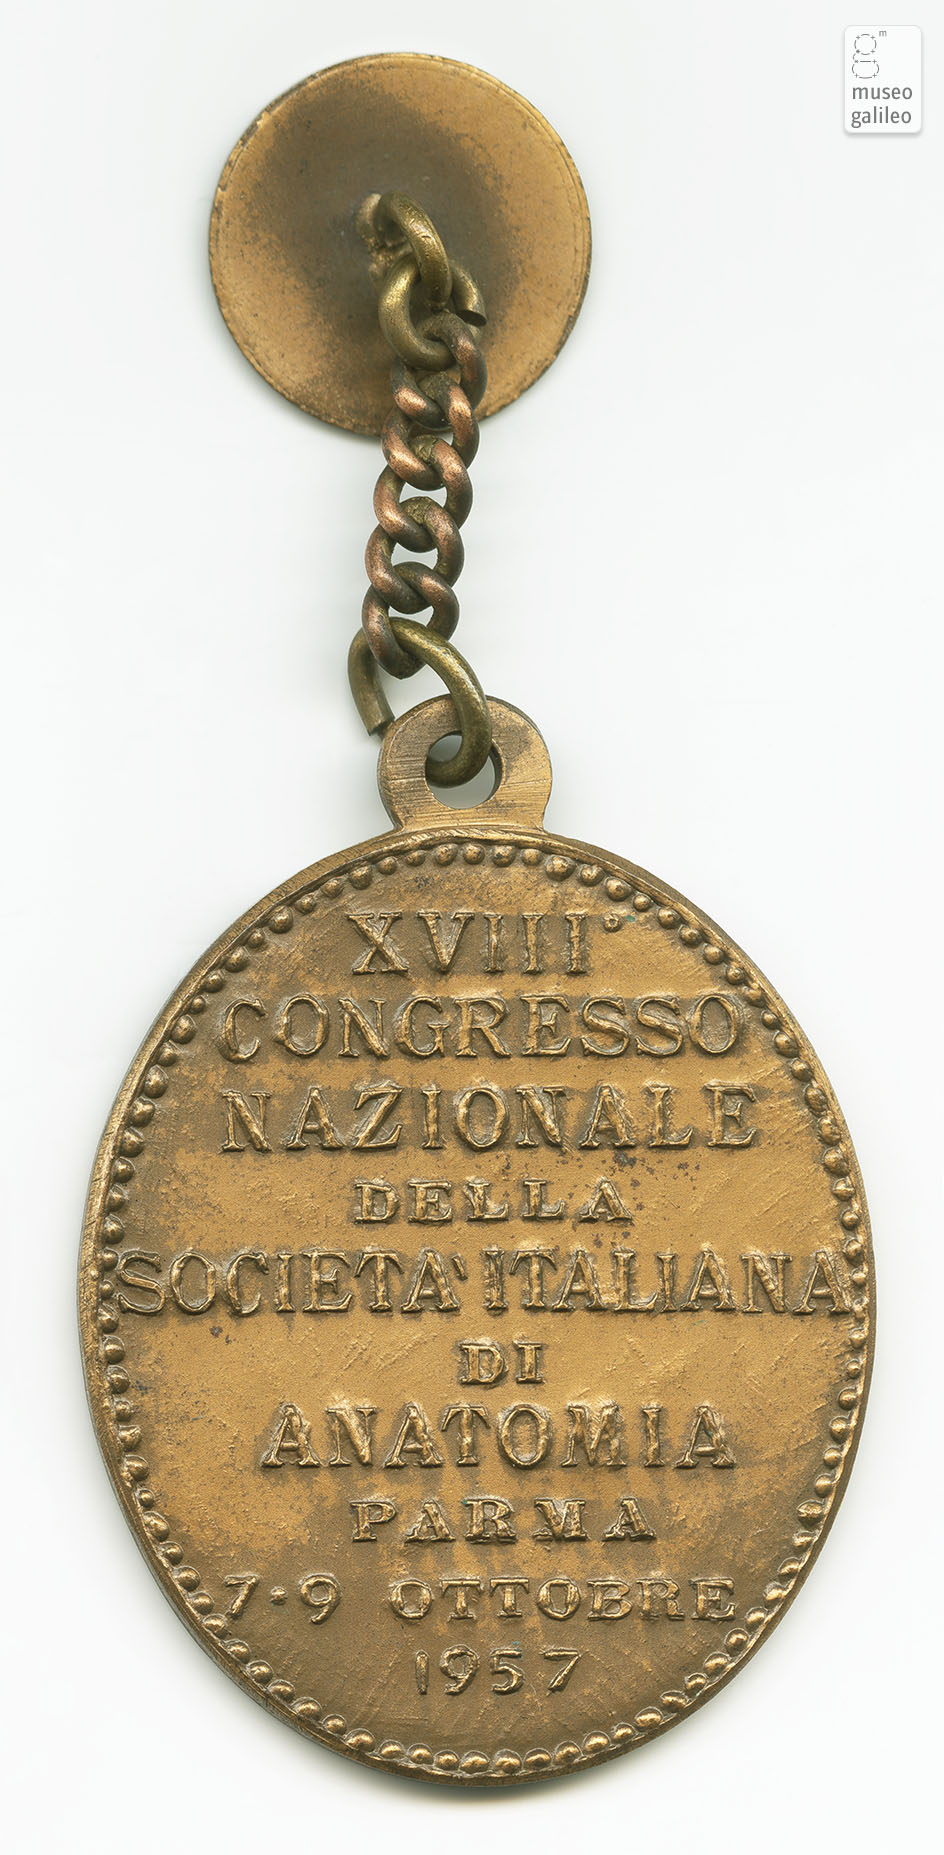 Congresso Nazionale della SocietÃ  Italiana di Anatomia (Parma, 1957) - reverse